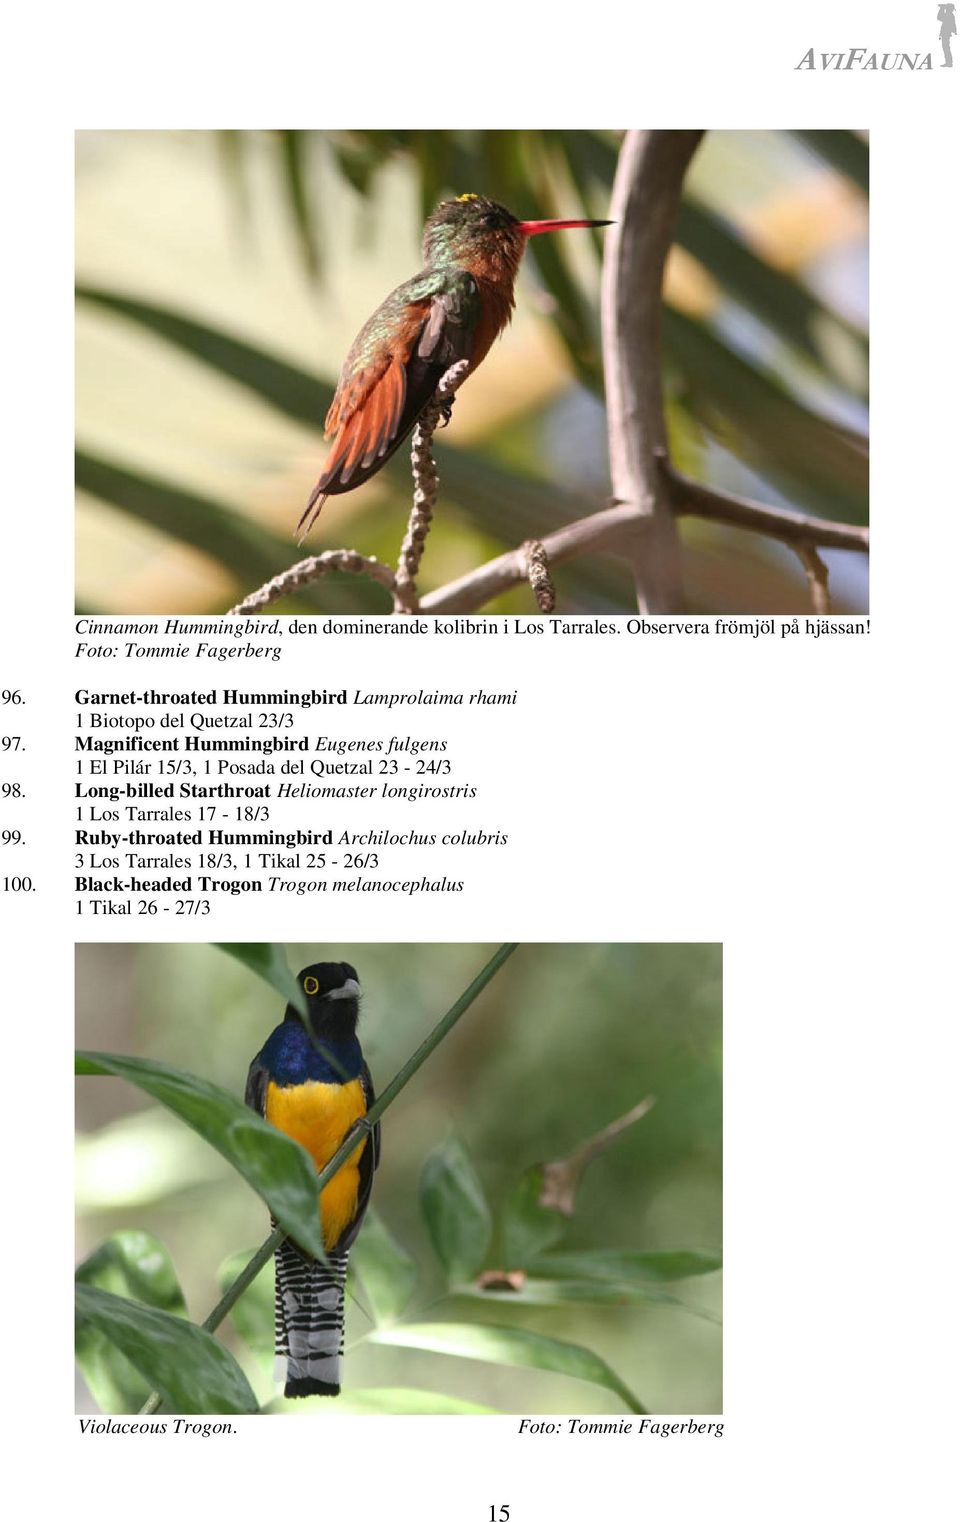 Magnificent Hummingbird Eugenes fulgens 1 El Pilár 15/3, 1 Posada del Quetzal 23-24/3 98.